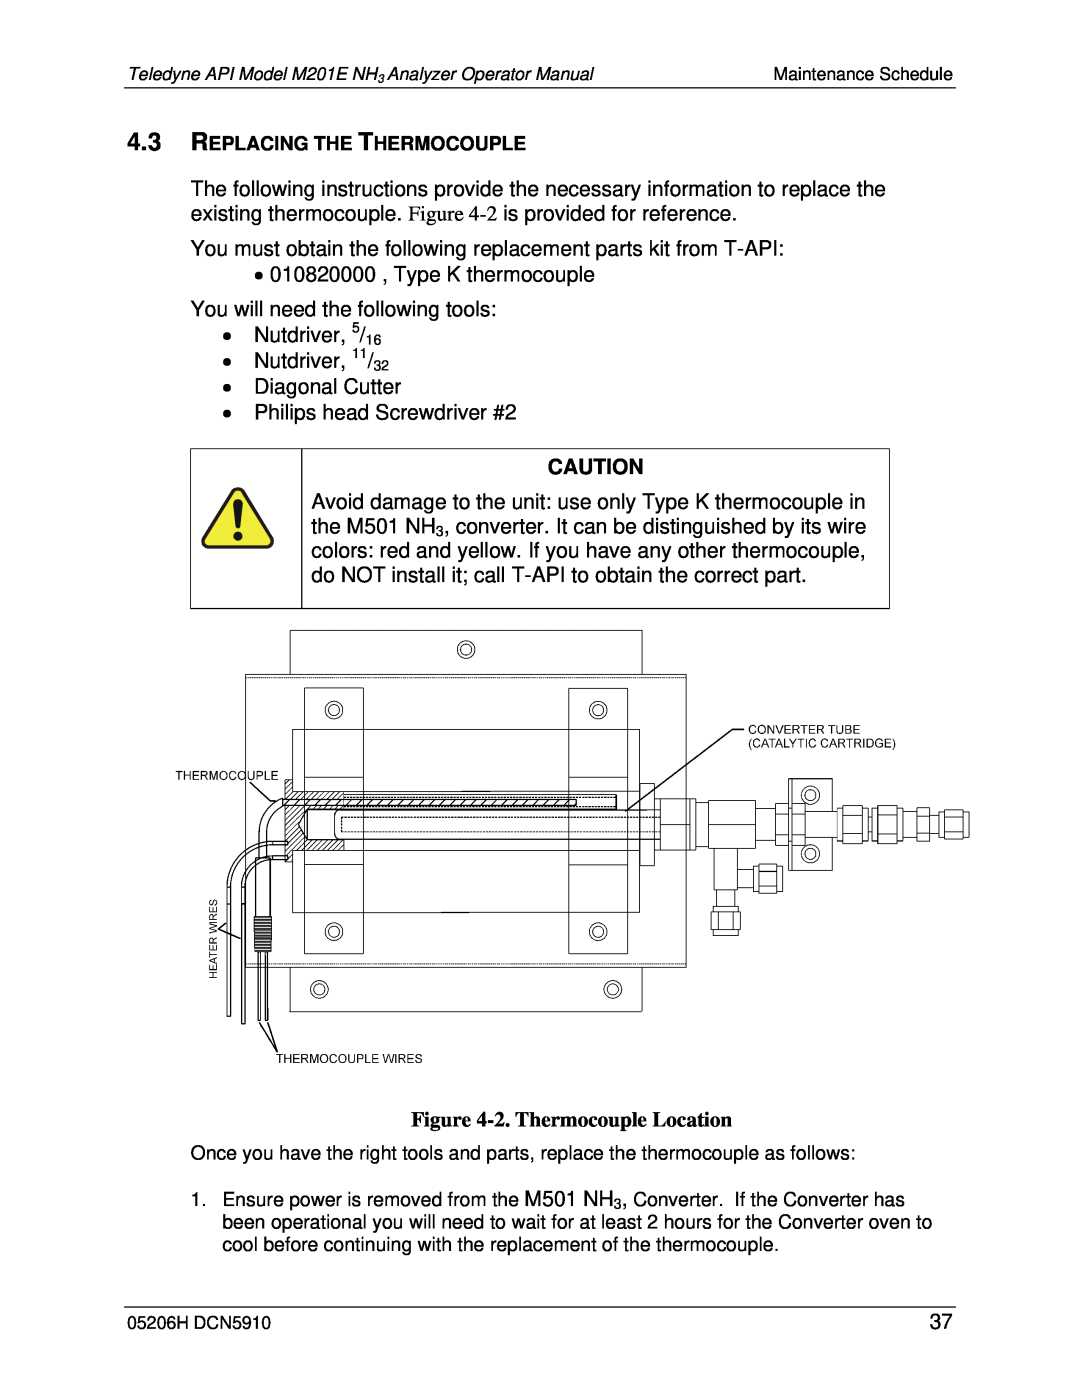 Teledyne M201E manual 2.Thermocouple Location 